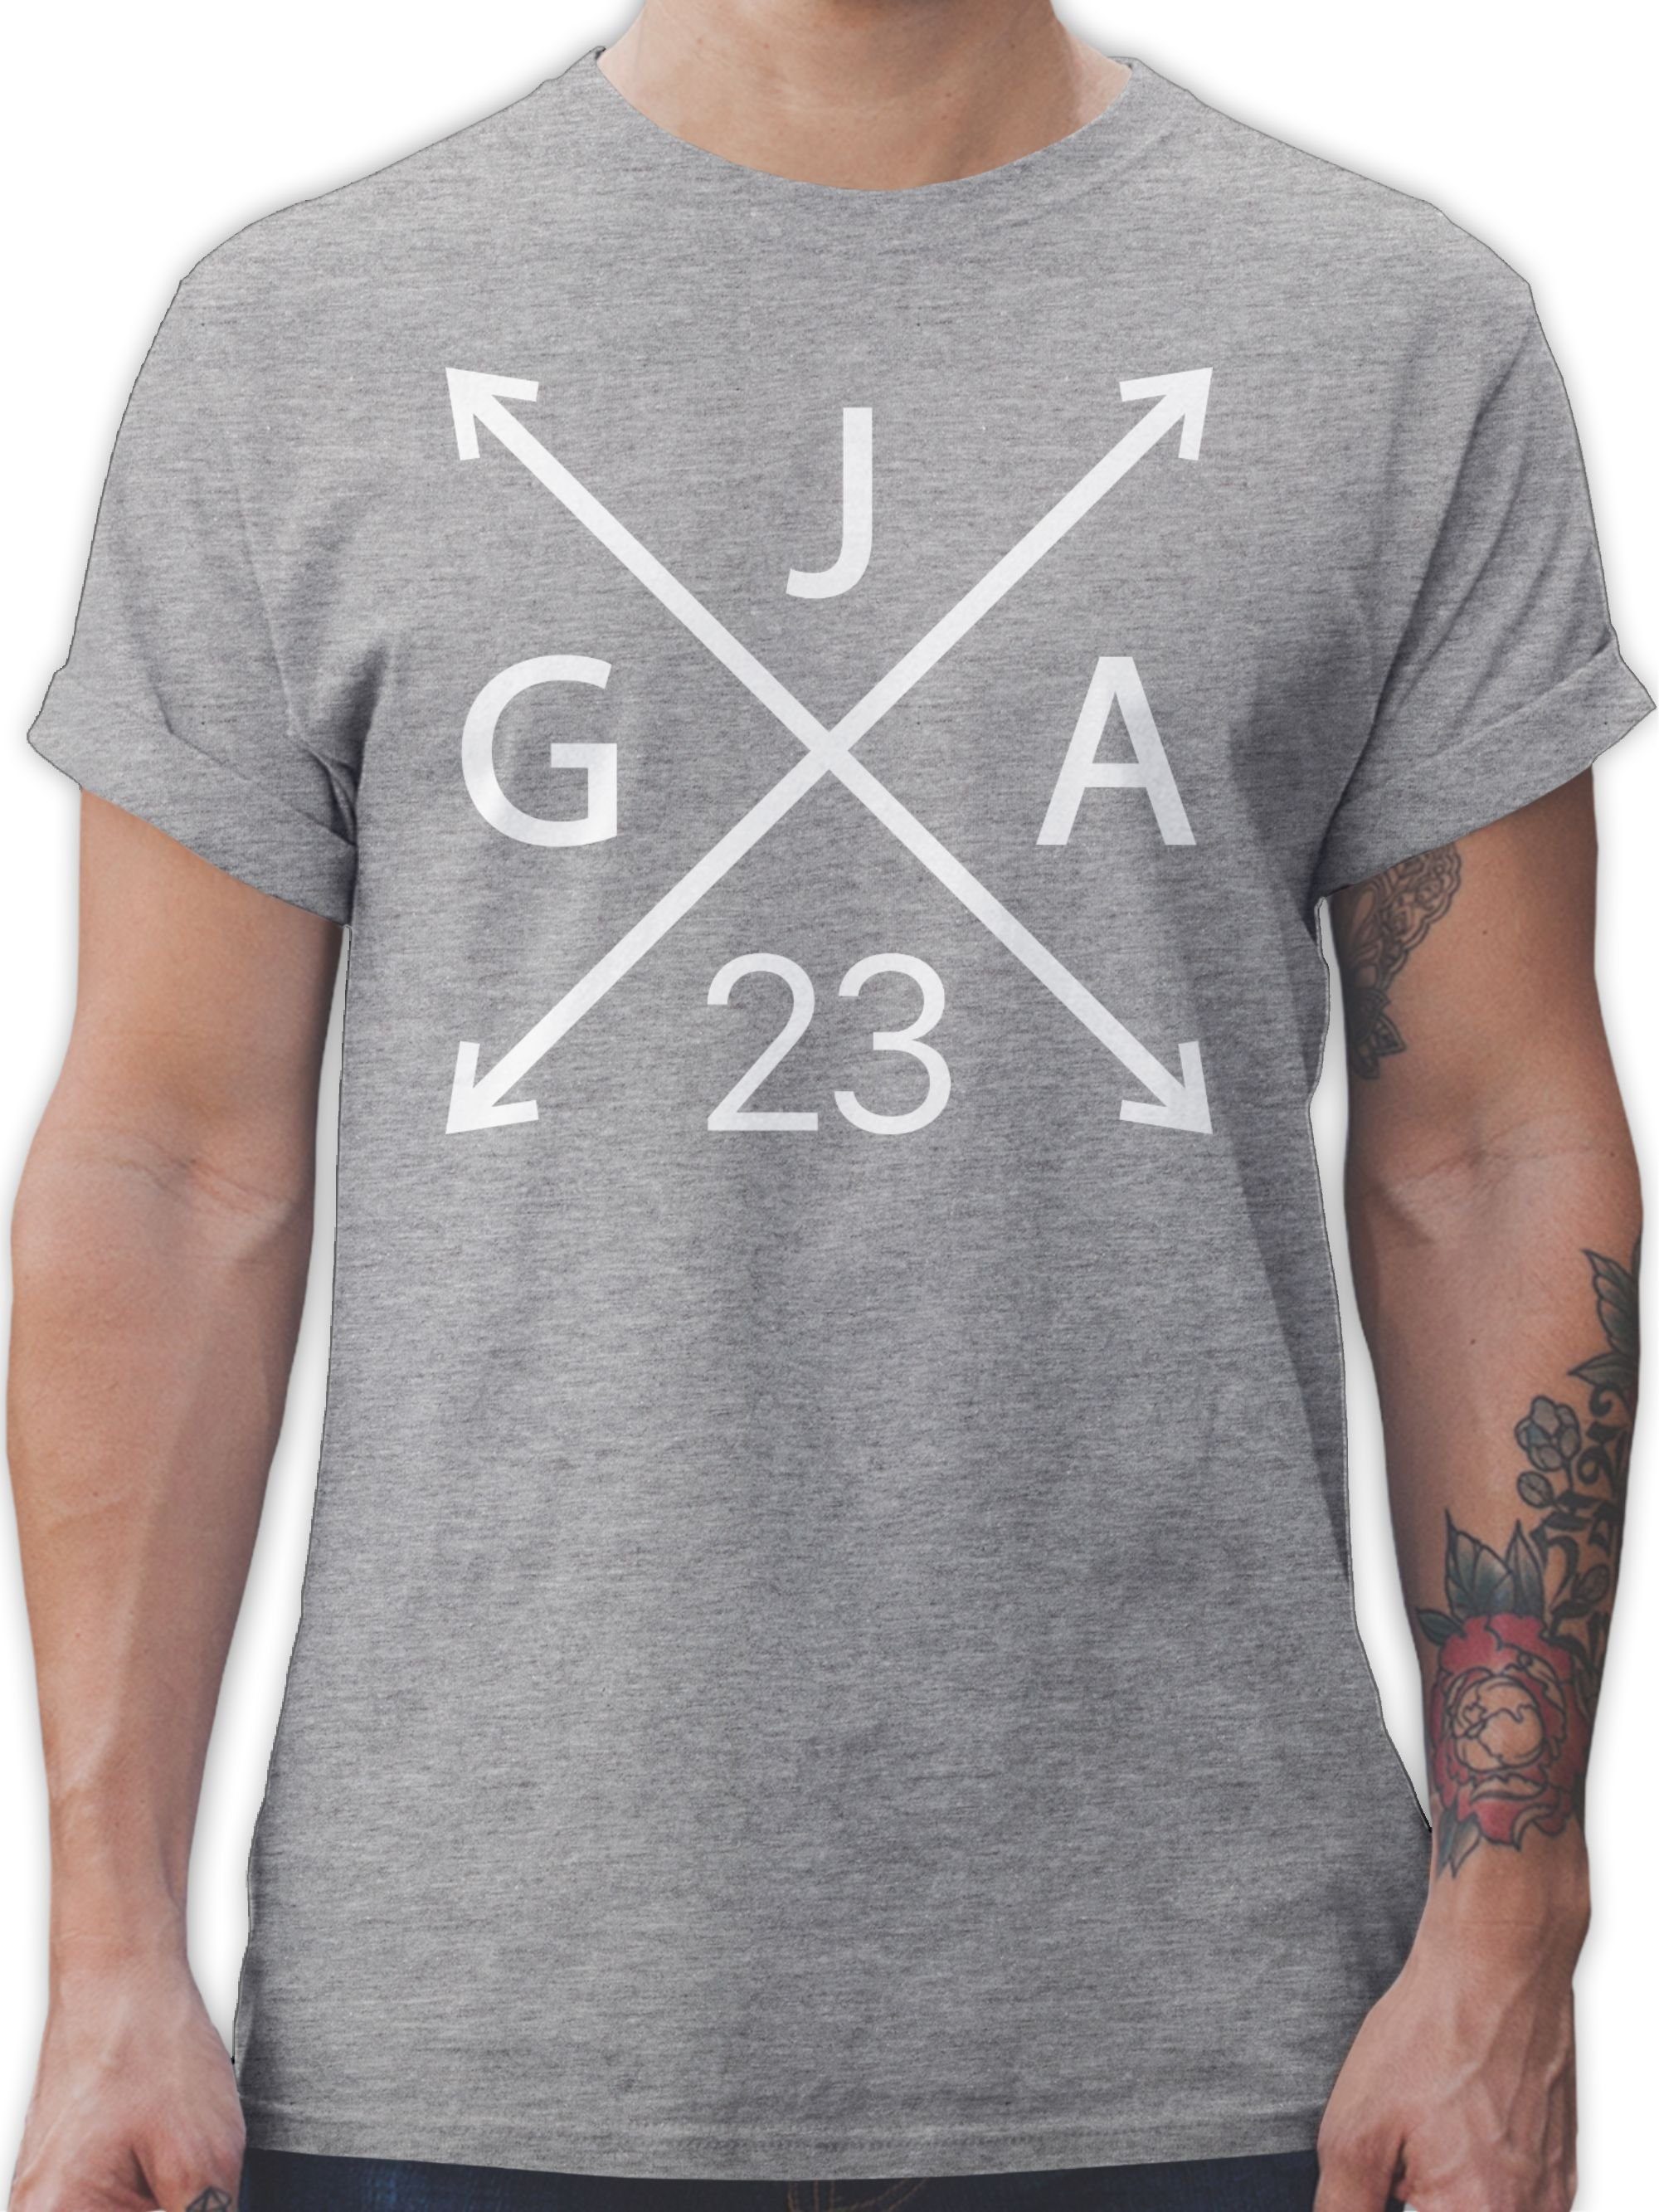 Shirtracer T-Shirt JGA meliert JGA Männer 03 Grau 2023